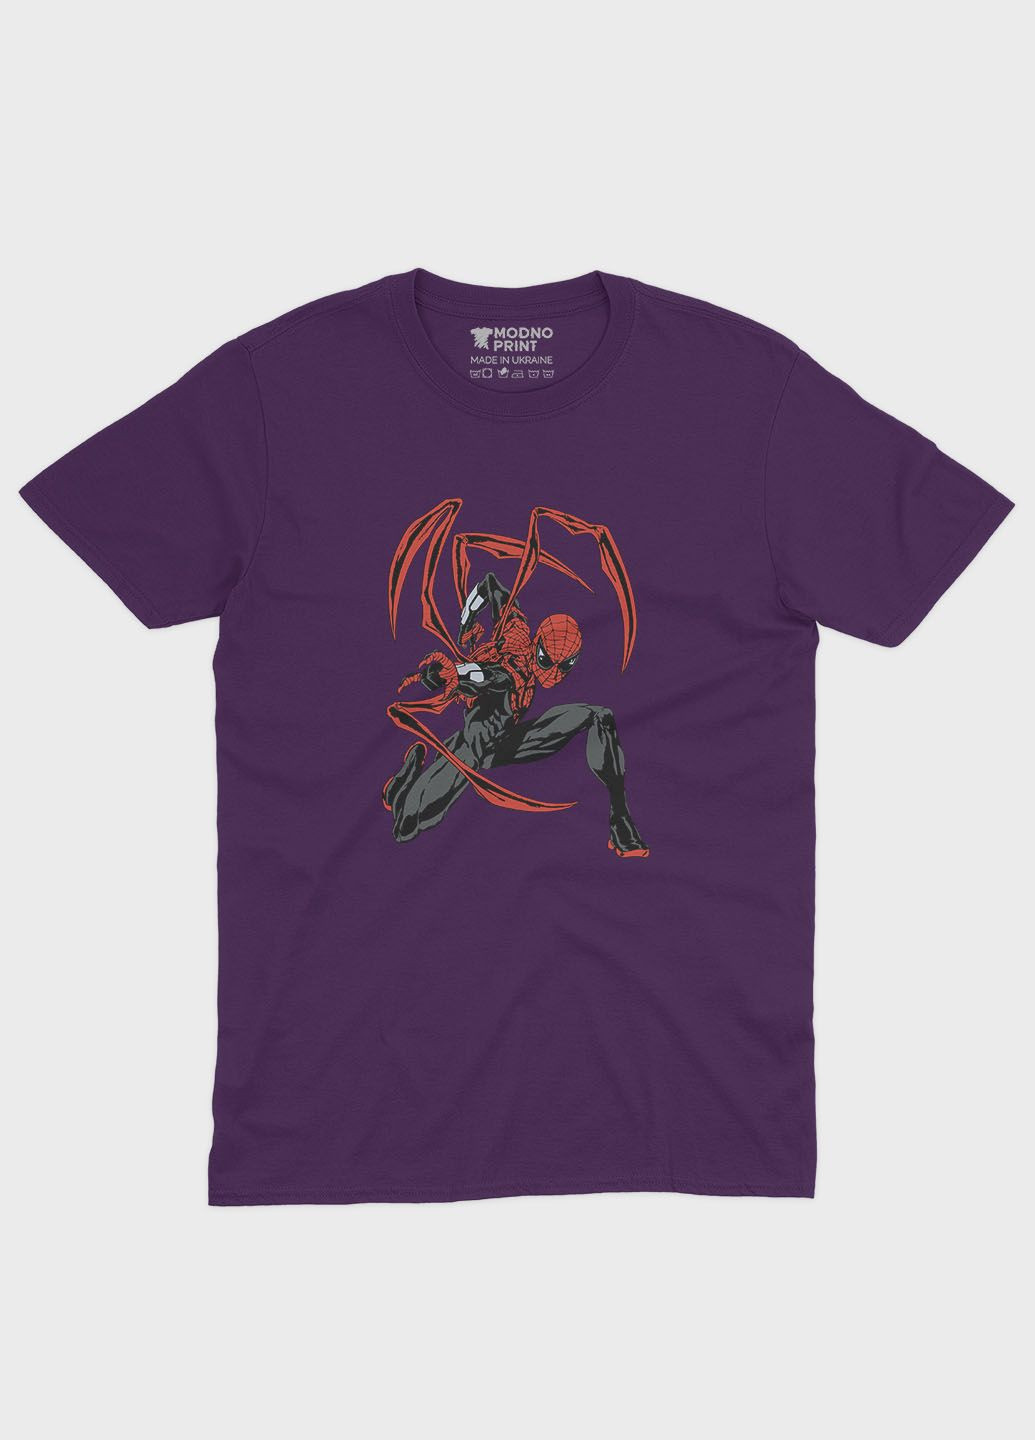 Фиолетовая демисезонная футболка для девочки с принтом супергероя - человек-паук (ts001-1-dby-006-014-115-g) Modno